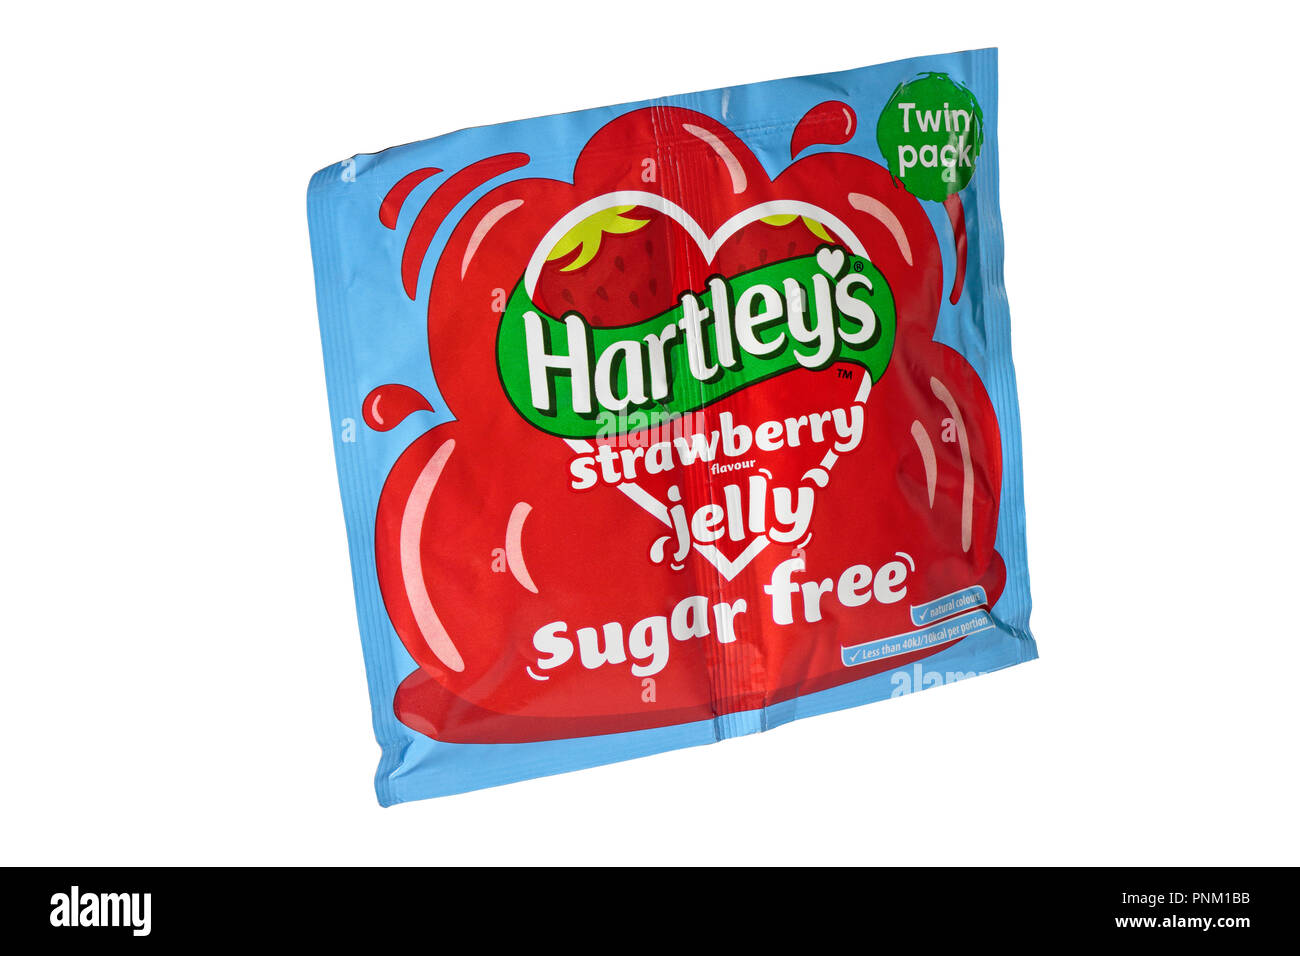 Un paquete de dos bolsitas de Hartley's sugar free jalea de fresa aislado sobre un fondo blanco. Foto de stock